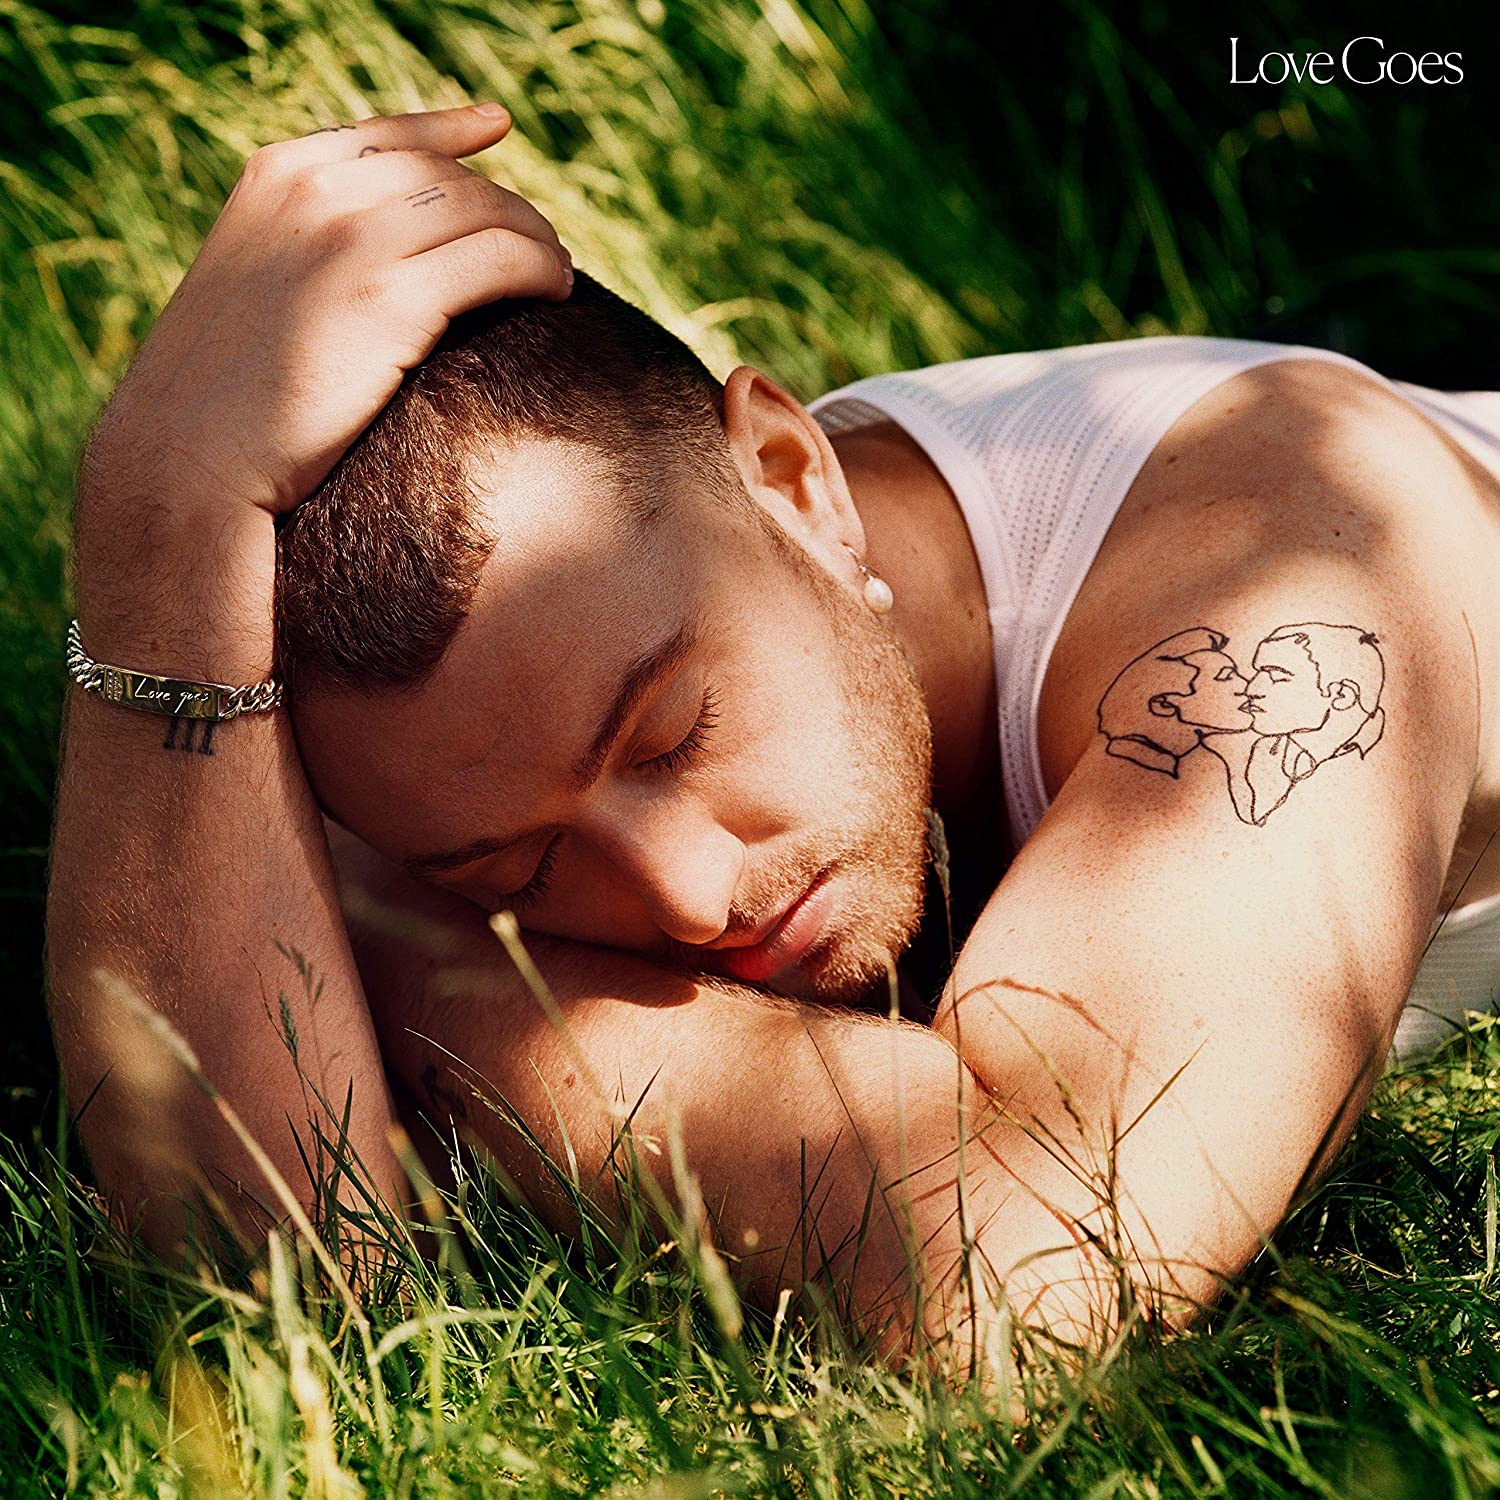 Capa de "Love Goes", álbum de Sam Smith. Foto: Divulgação